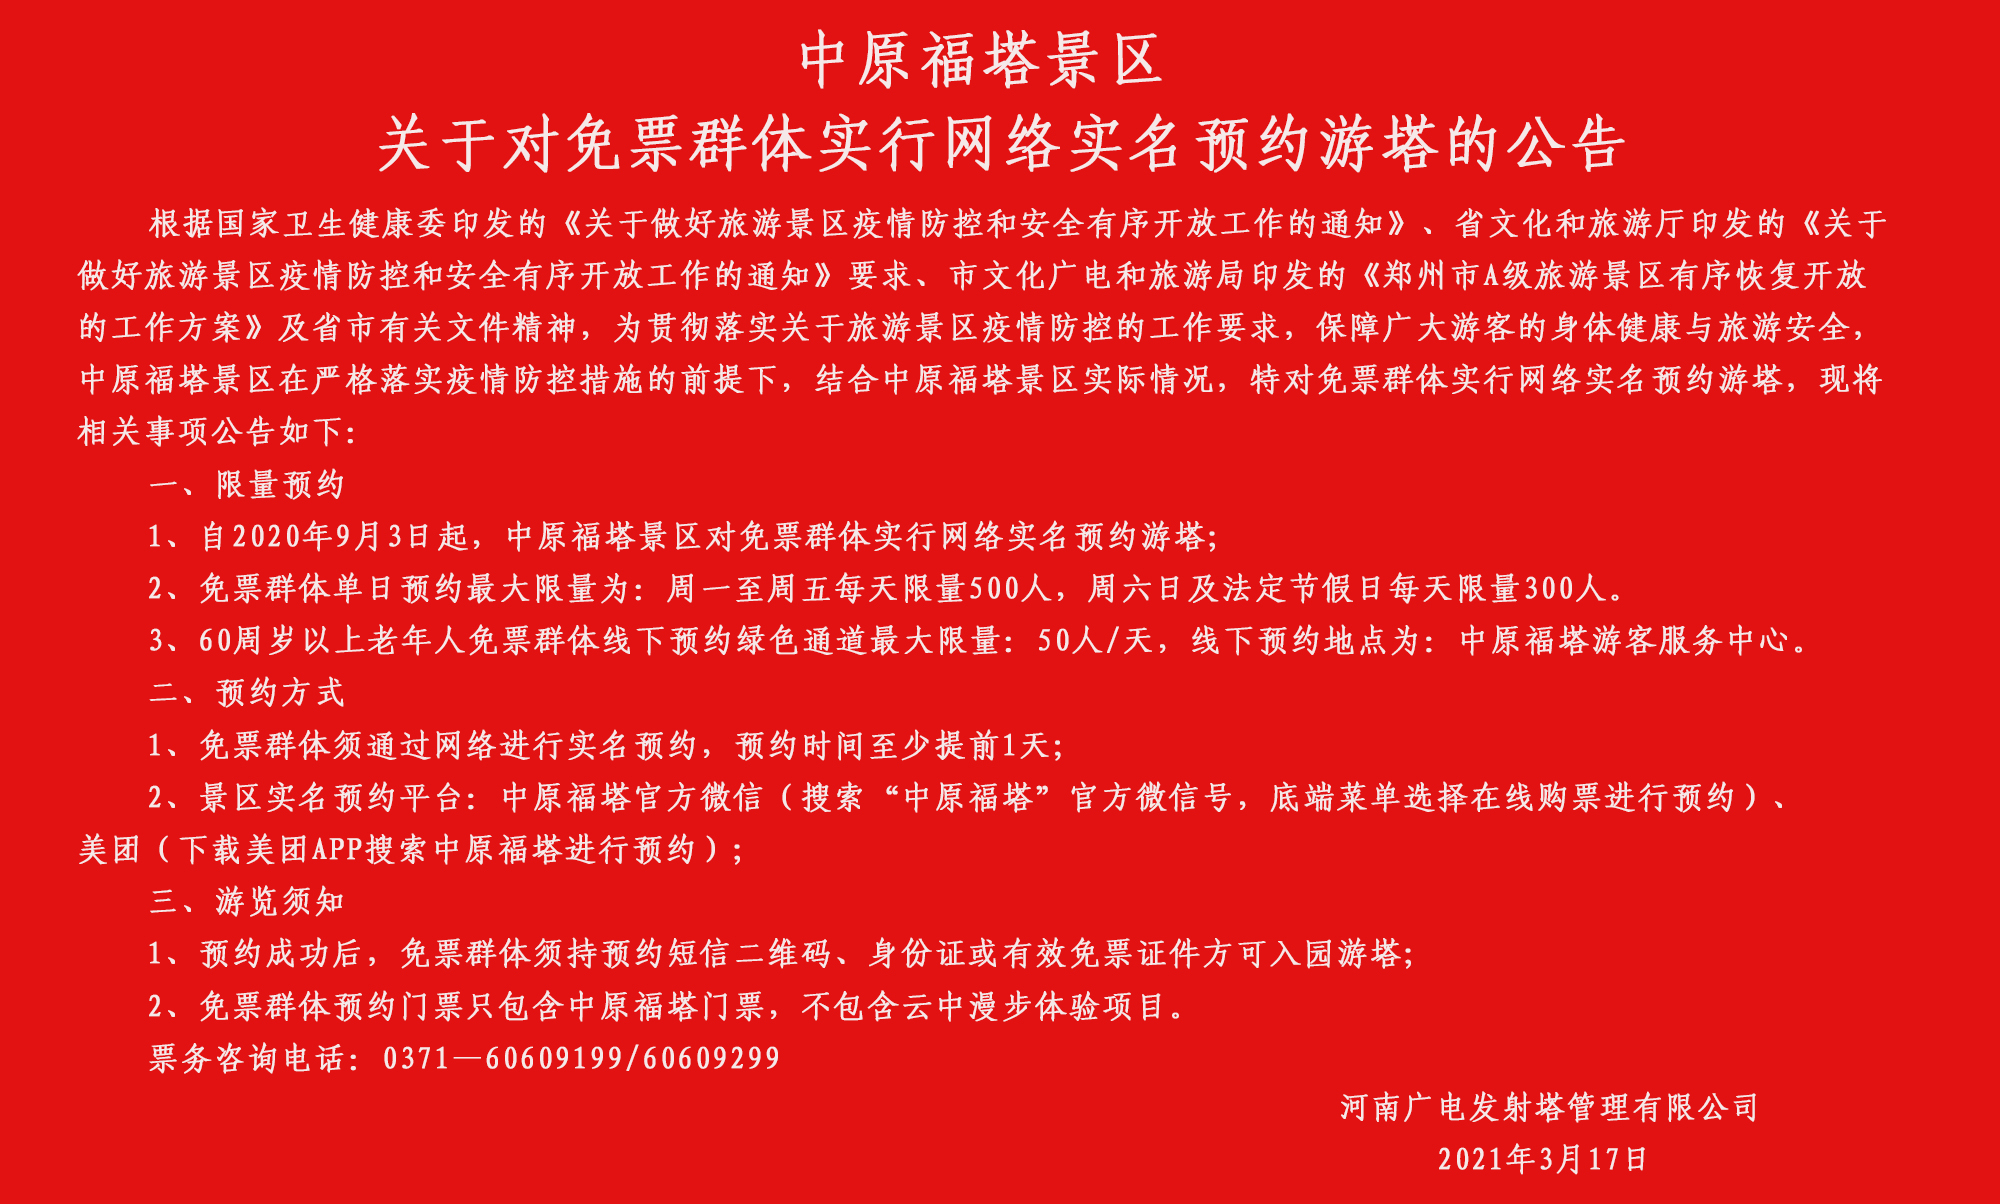 中原福塔景区 关于对免票群体实行网络实名预约游塔的公告